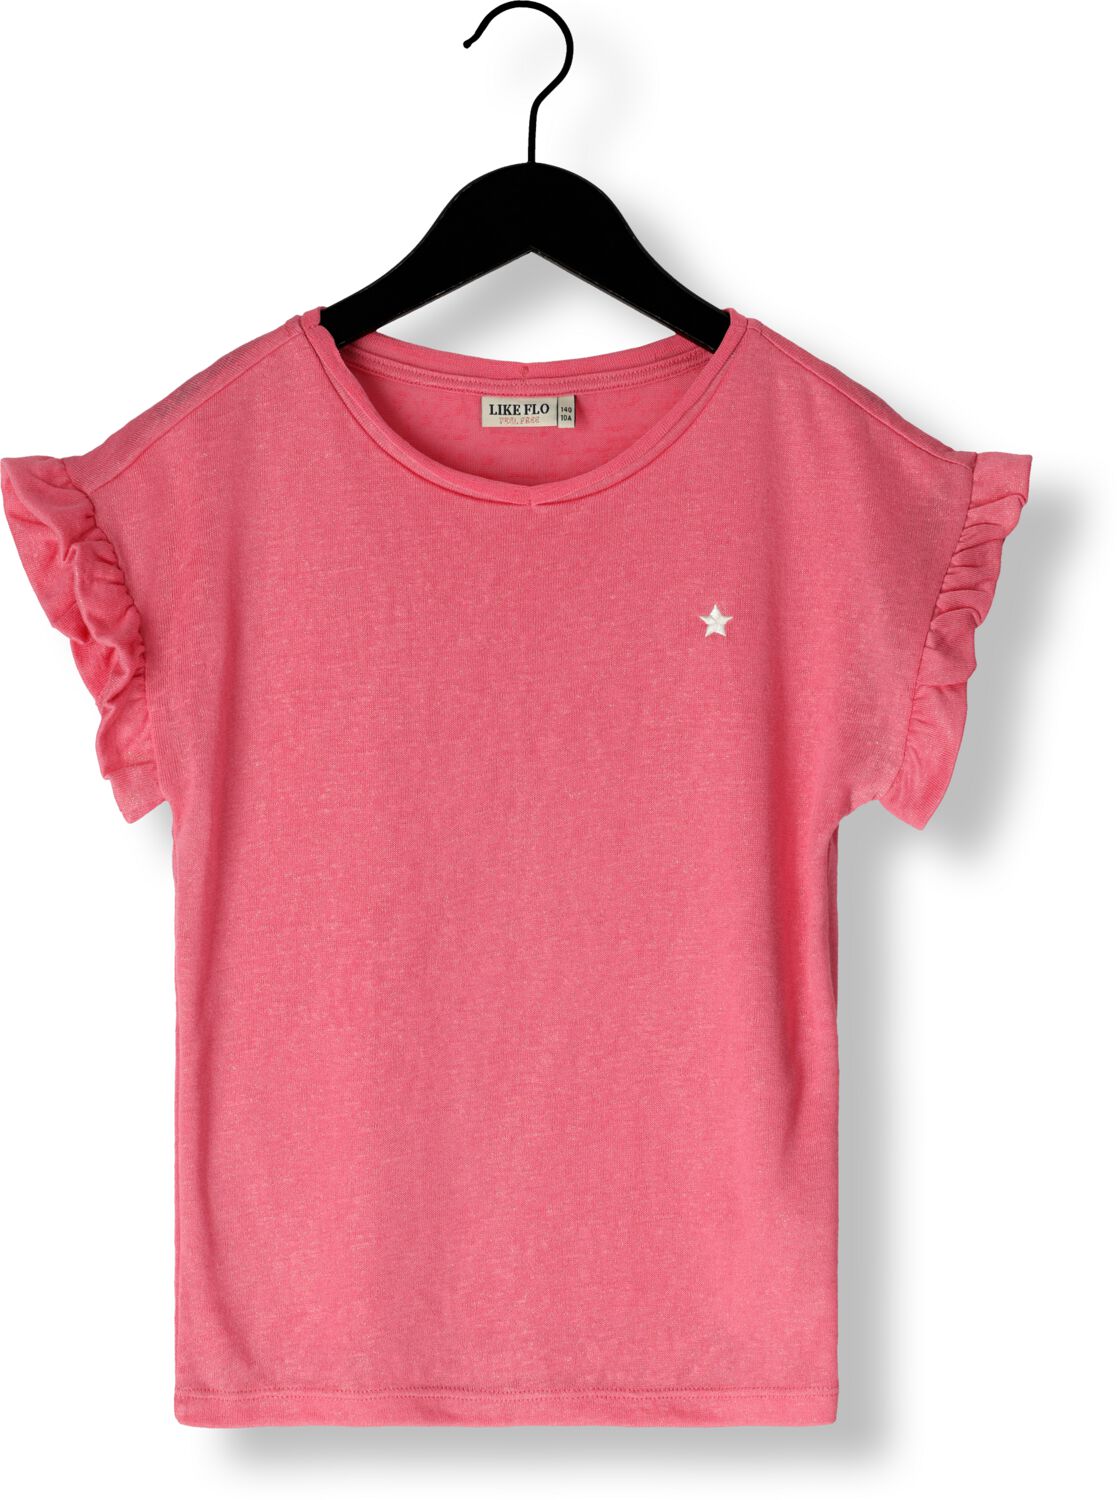 LIKE FLO Meisjes Tops & T-shirts Metallic Slub Jersey Tee Roze